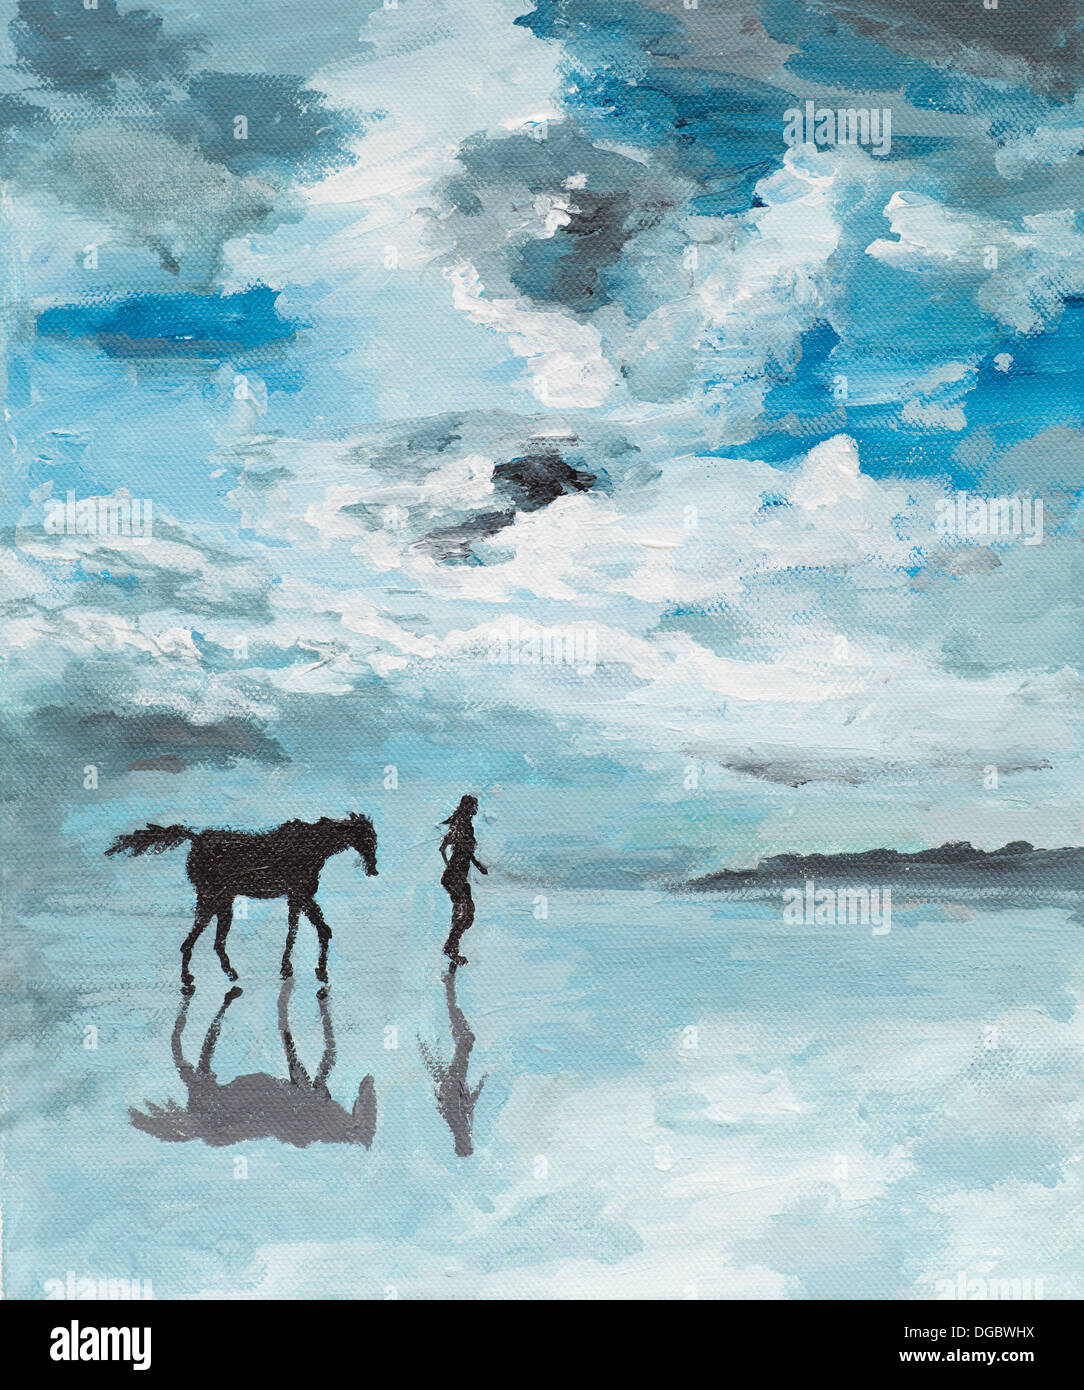 Peinture à l'huile illustrant un homme et un cheval s'exécutant sur une mer, scène sereine Banque D'Images